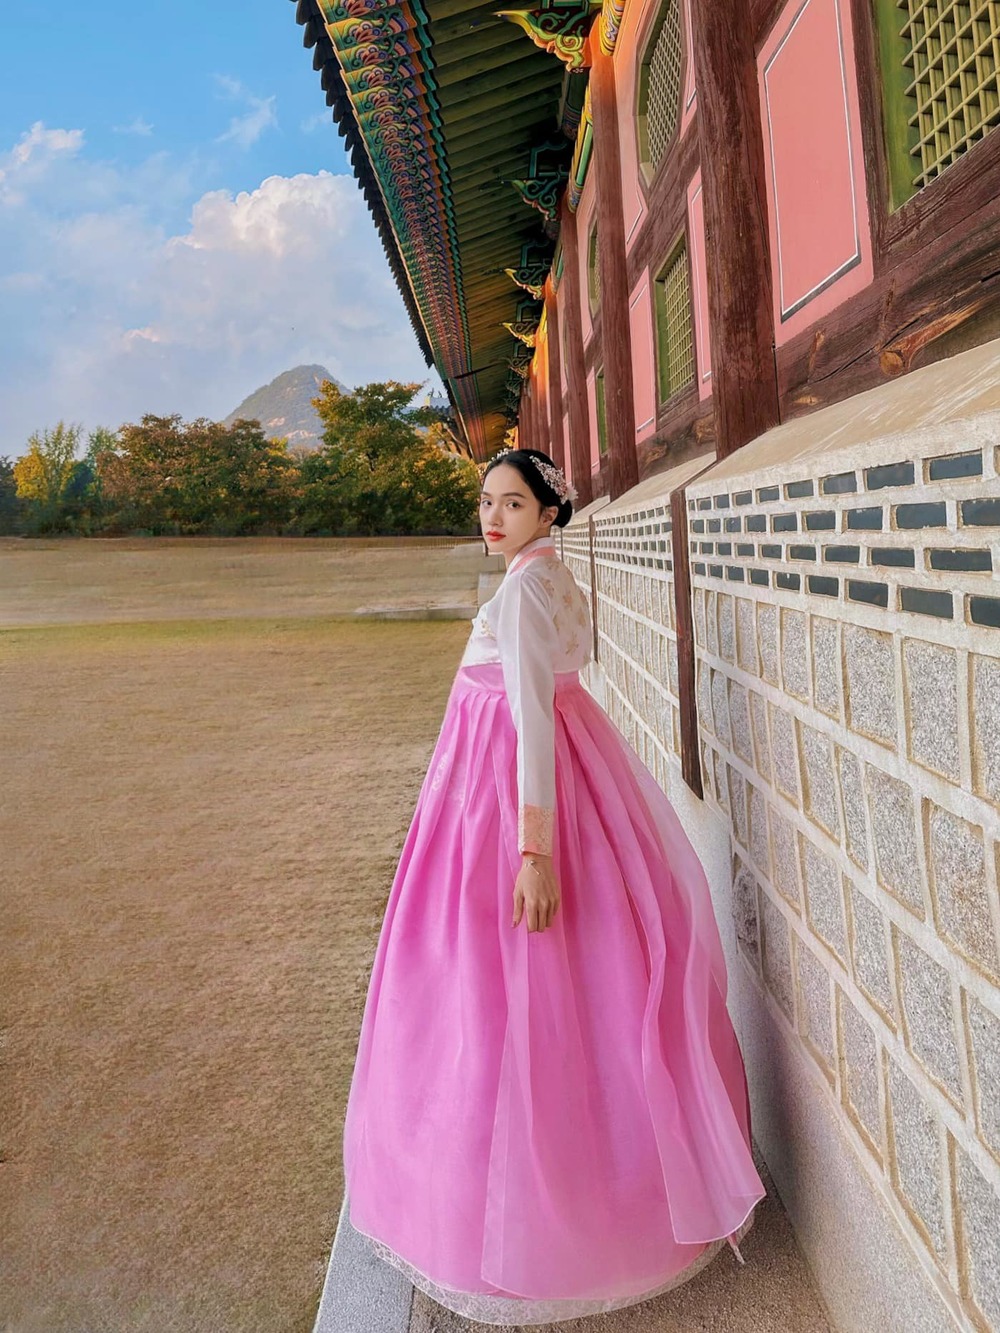  
Hương Giang rất phù hợp với những trang phục có tông màu hồng. (Ảnh: Facebook Hoa hậu Hương Giang)